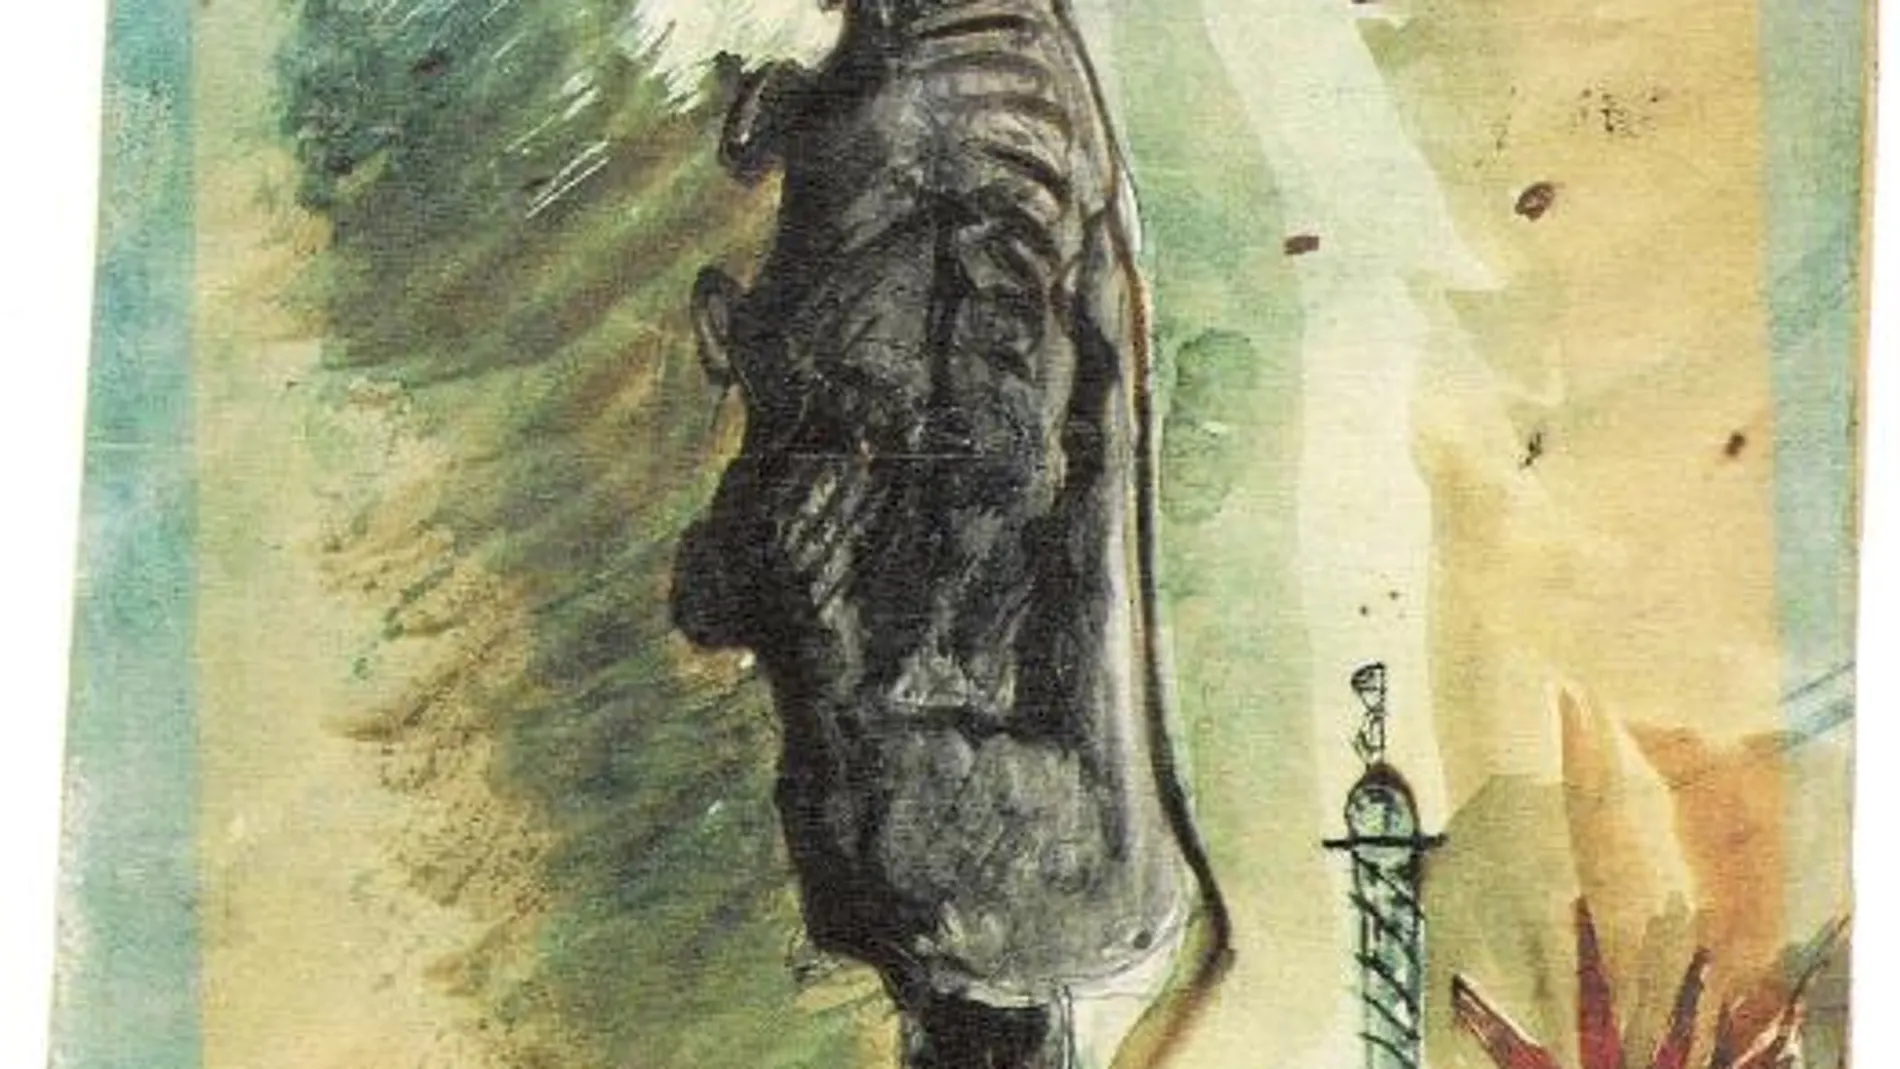 Autorretrato titulado «Baudelaire bajo la influencia del hachís», que ahora pertenece a una colección privada